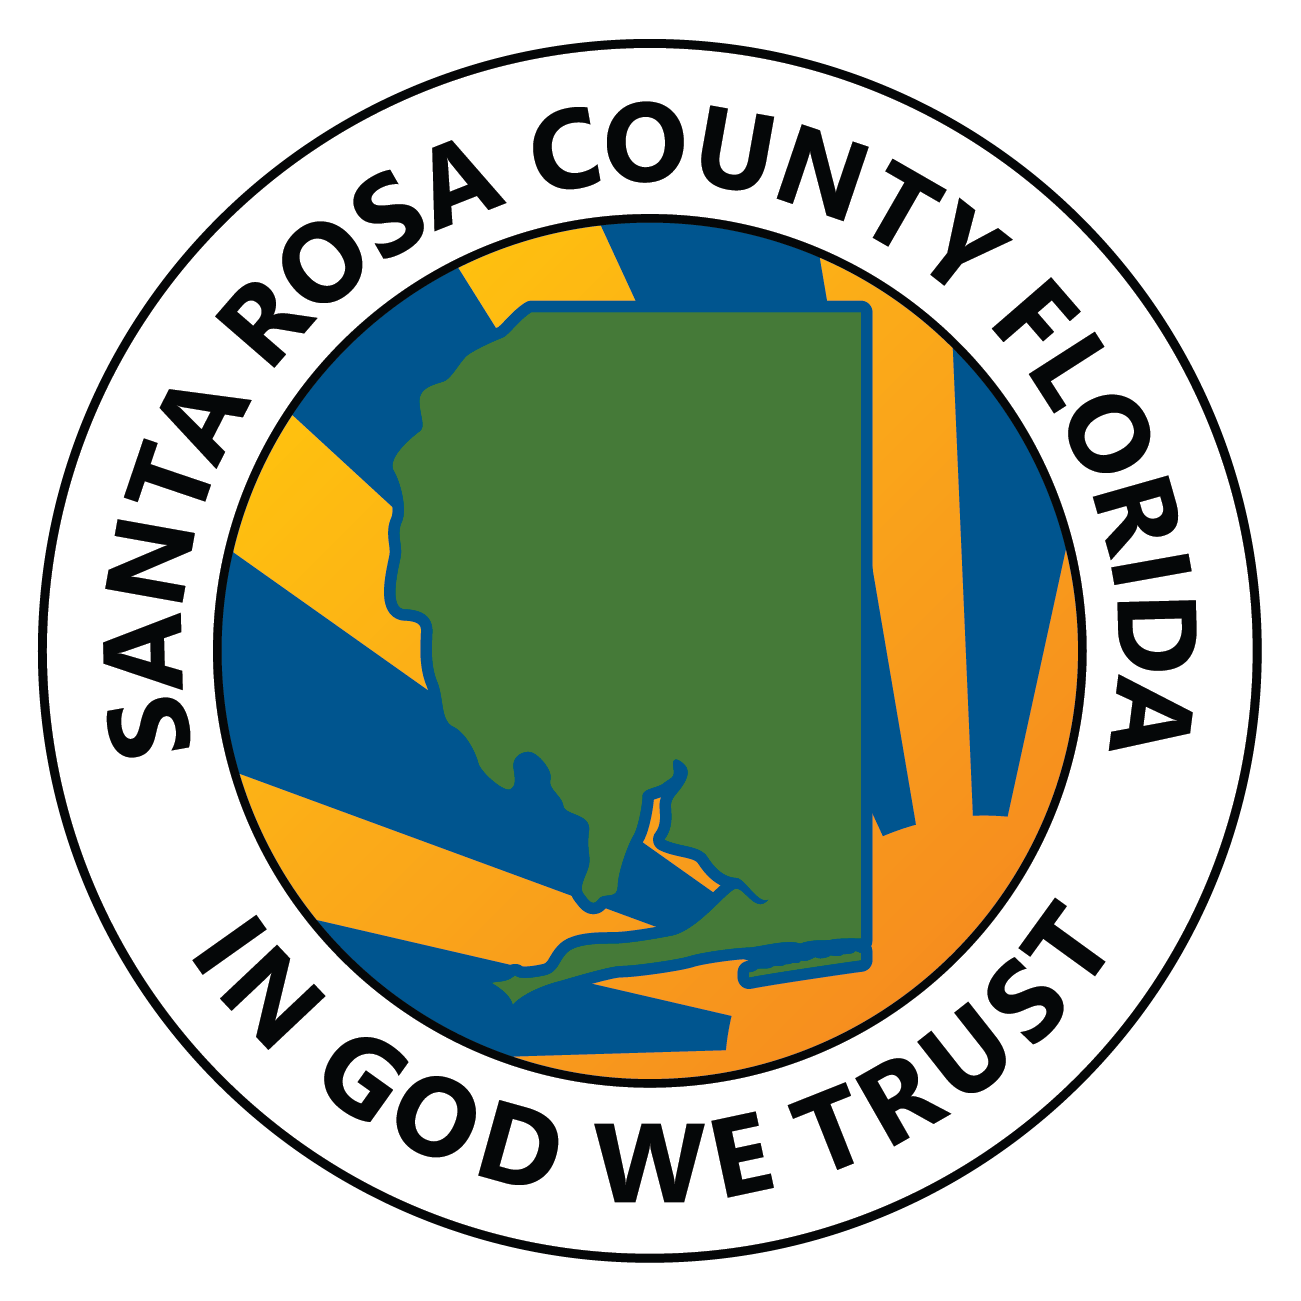 04/03/24 - Santa Rosa County Update